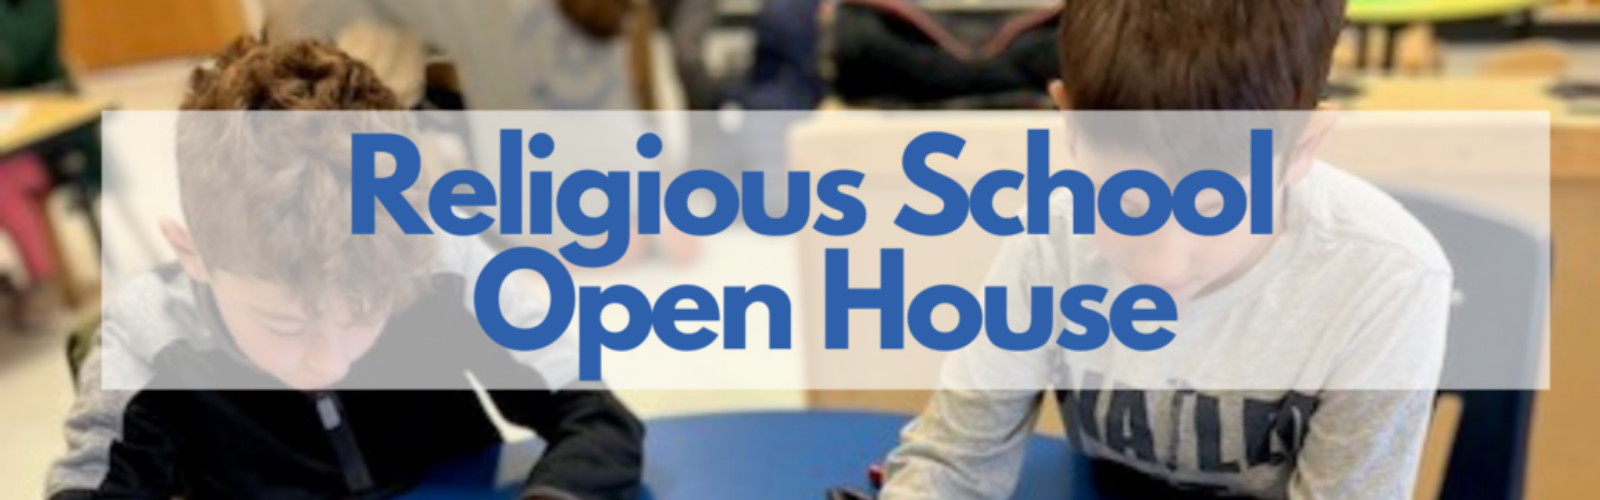 Religious school open house